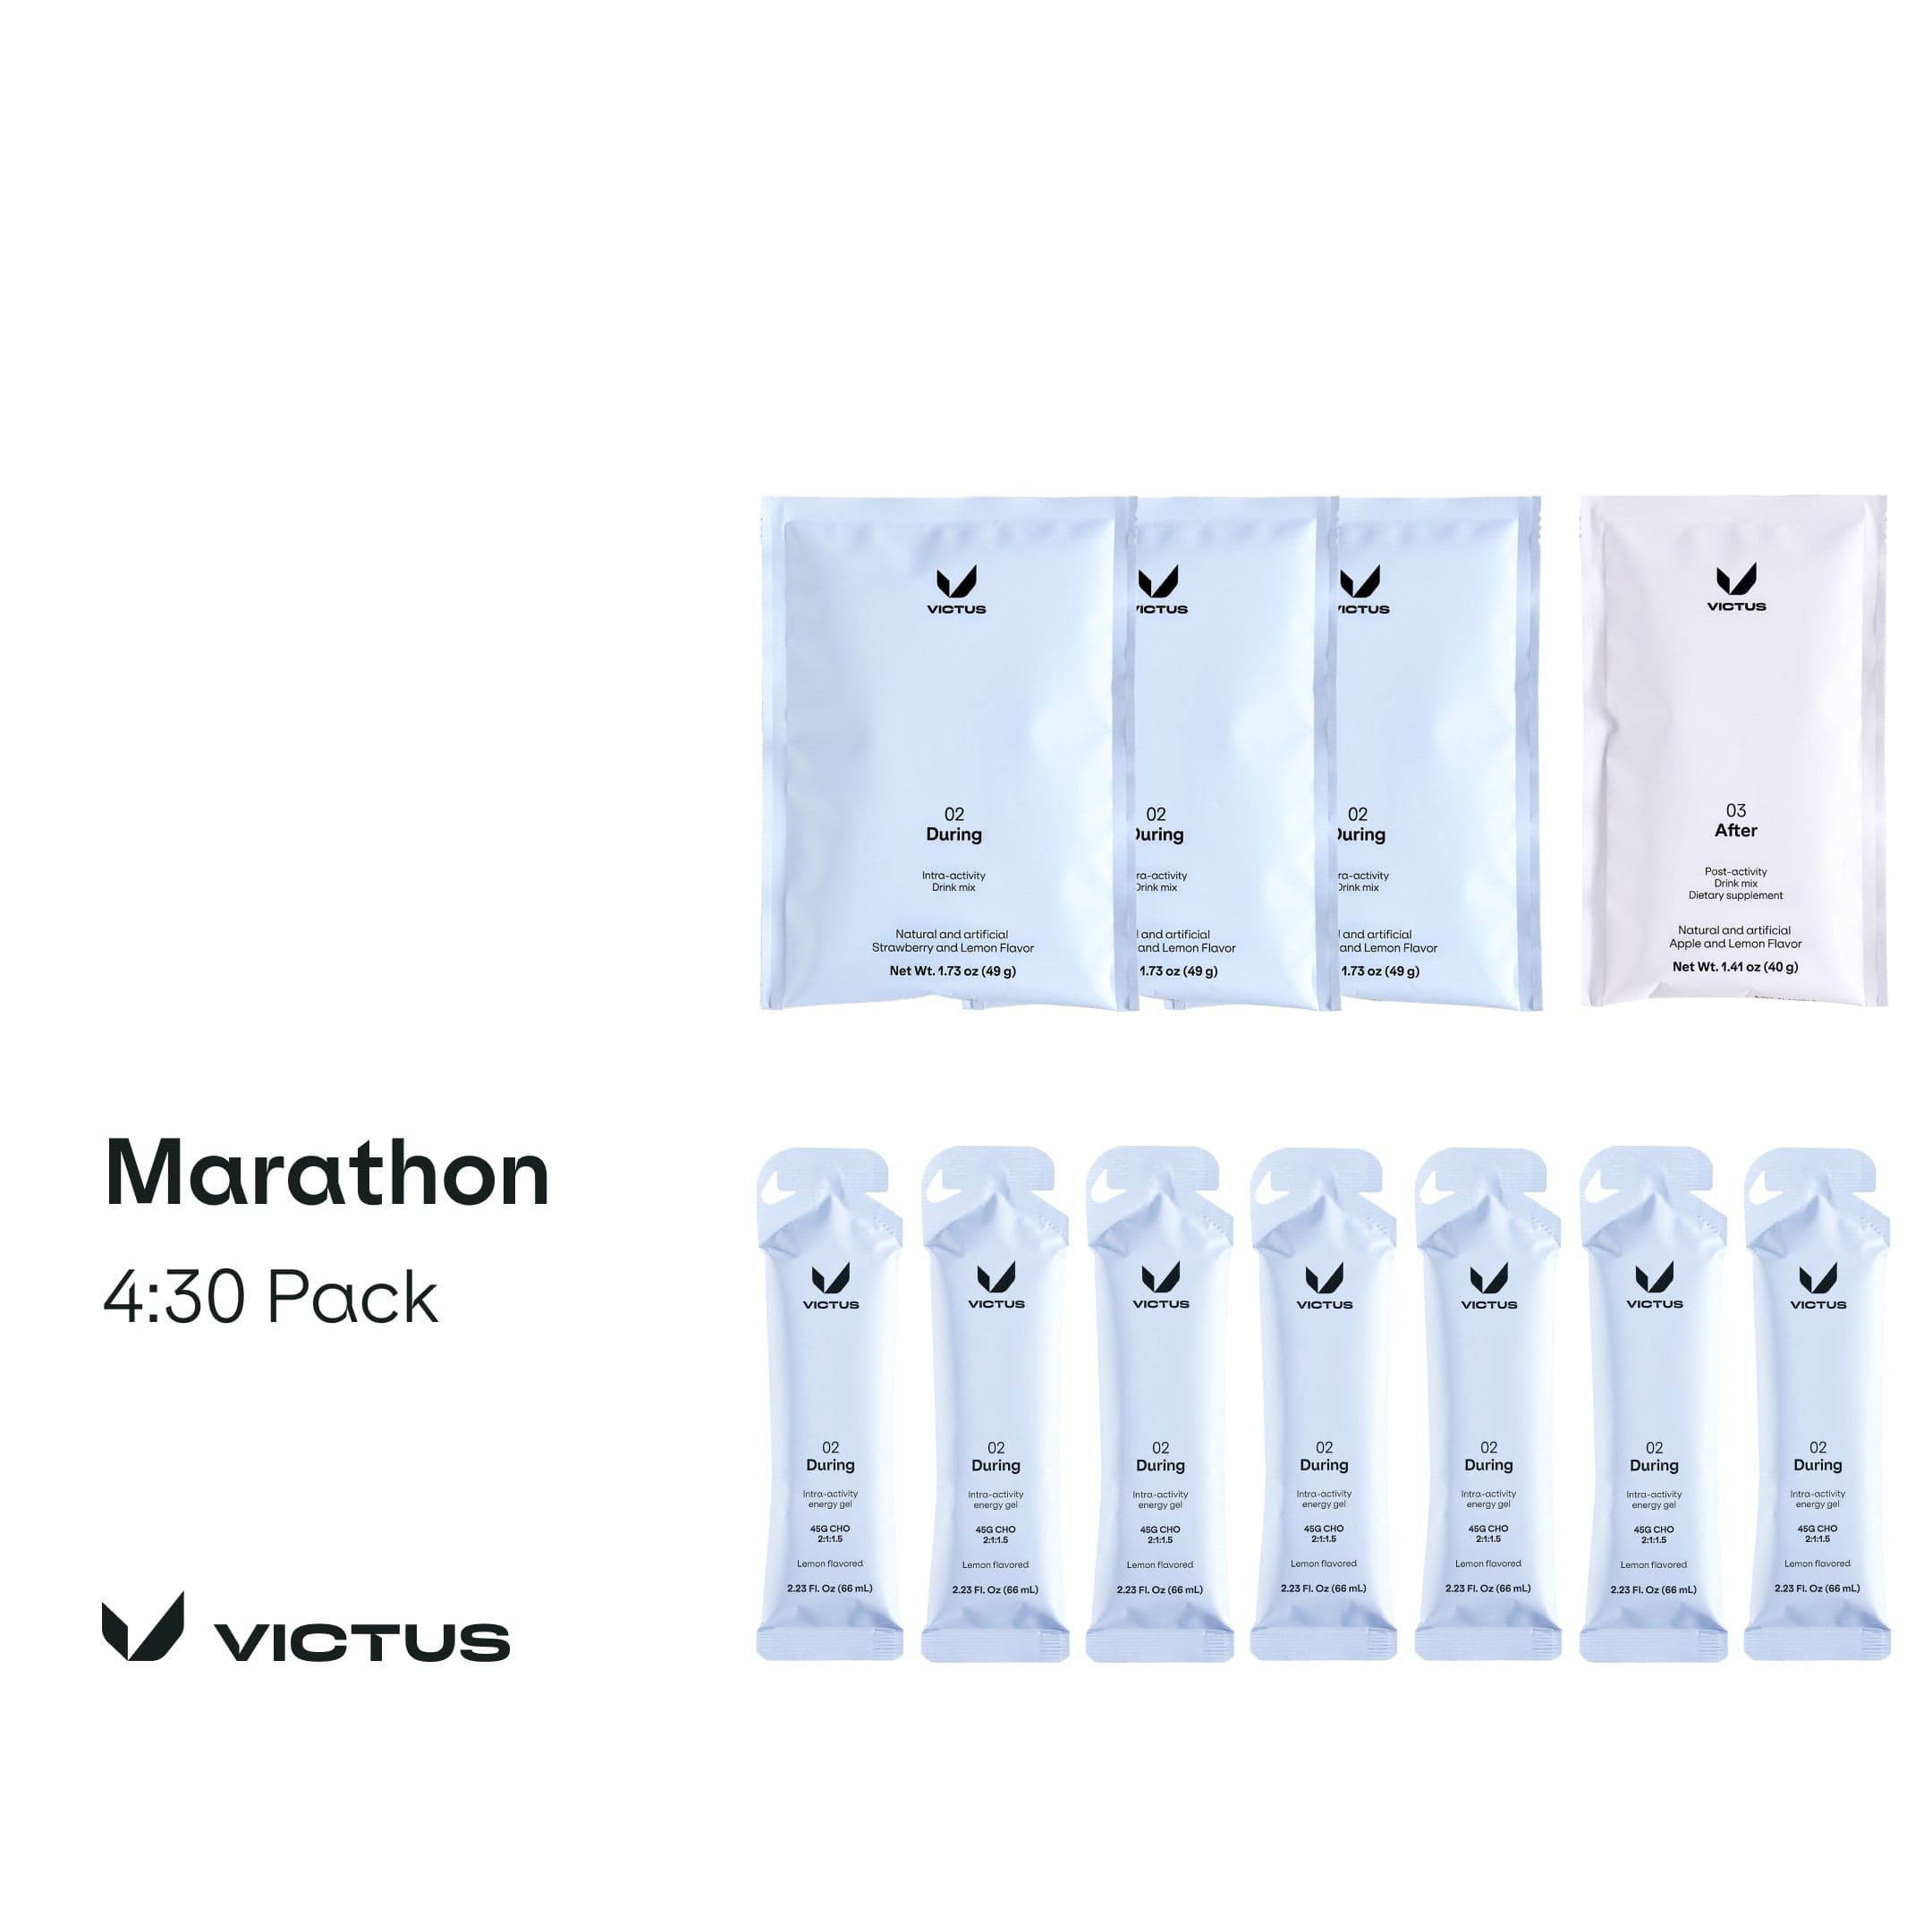 Victus Trial Pack 4:30 Pack Marathon Pack XMiles